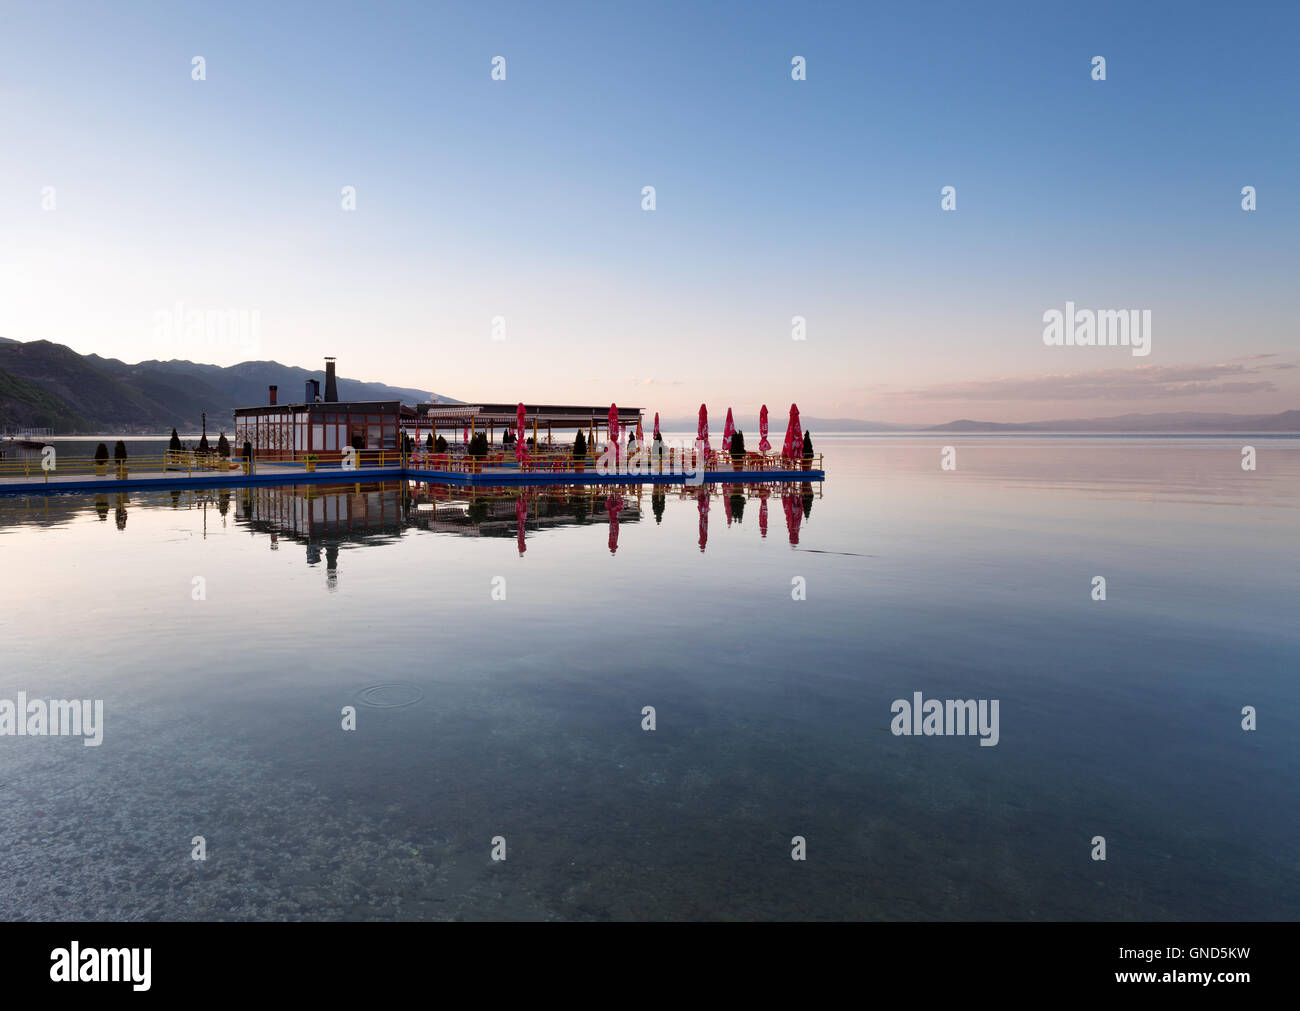 Restaurant au bord du lac Ohrid au coucher du soleil, Pogradec, Albanie Banque D'Images